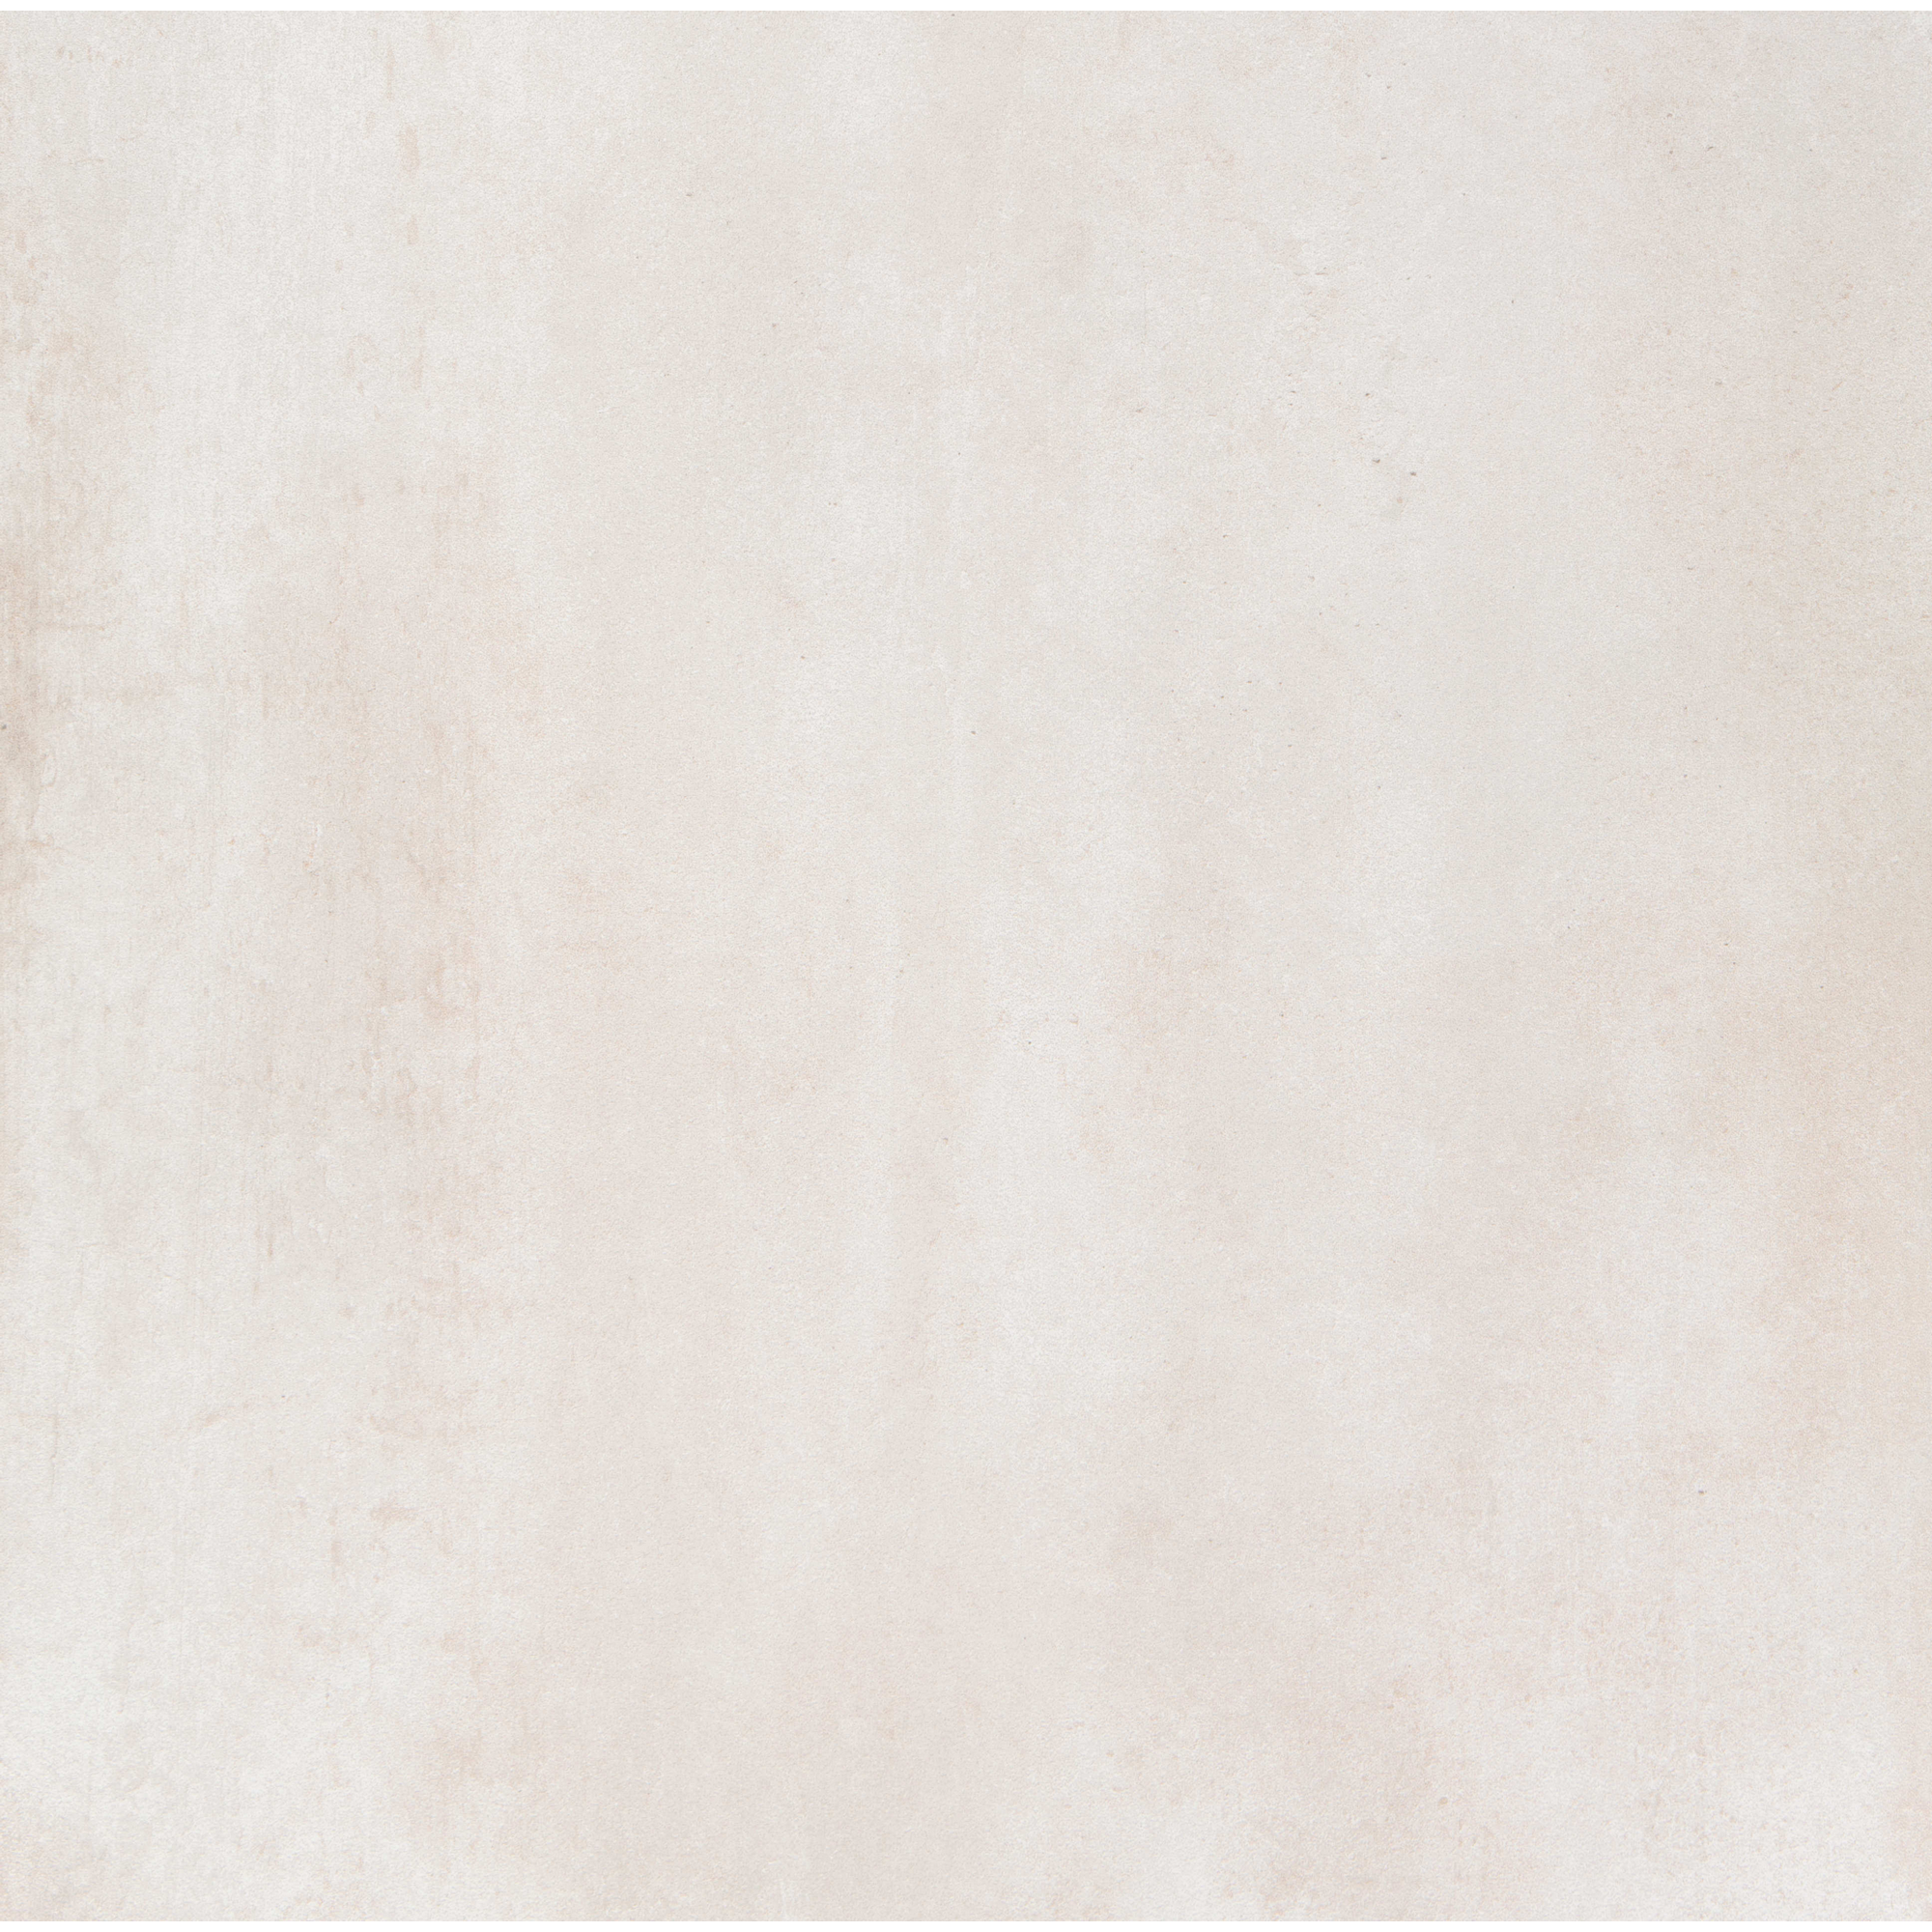 Bodenfliese 'Bitumen' Feinsteinzeug beige 59,2 x 59,2 cm + product picture